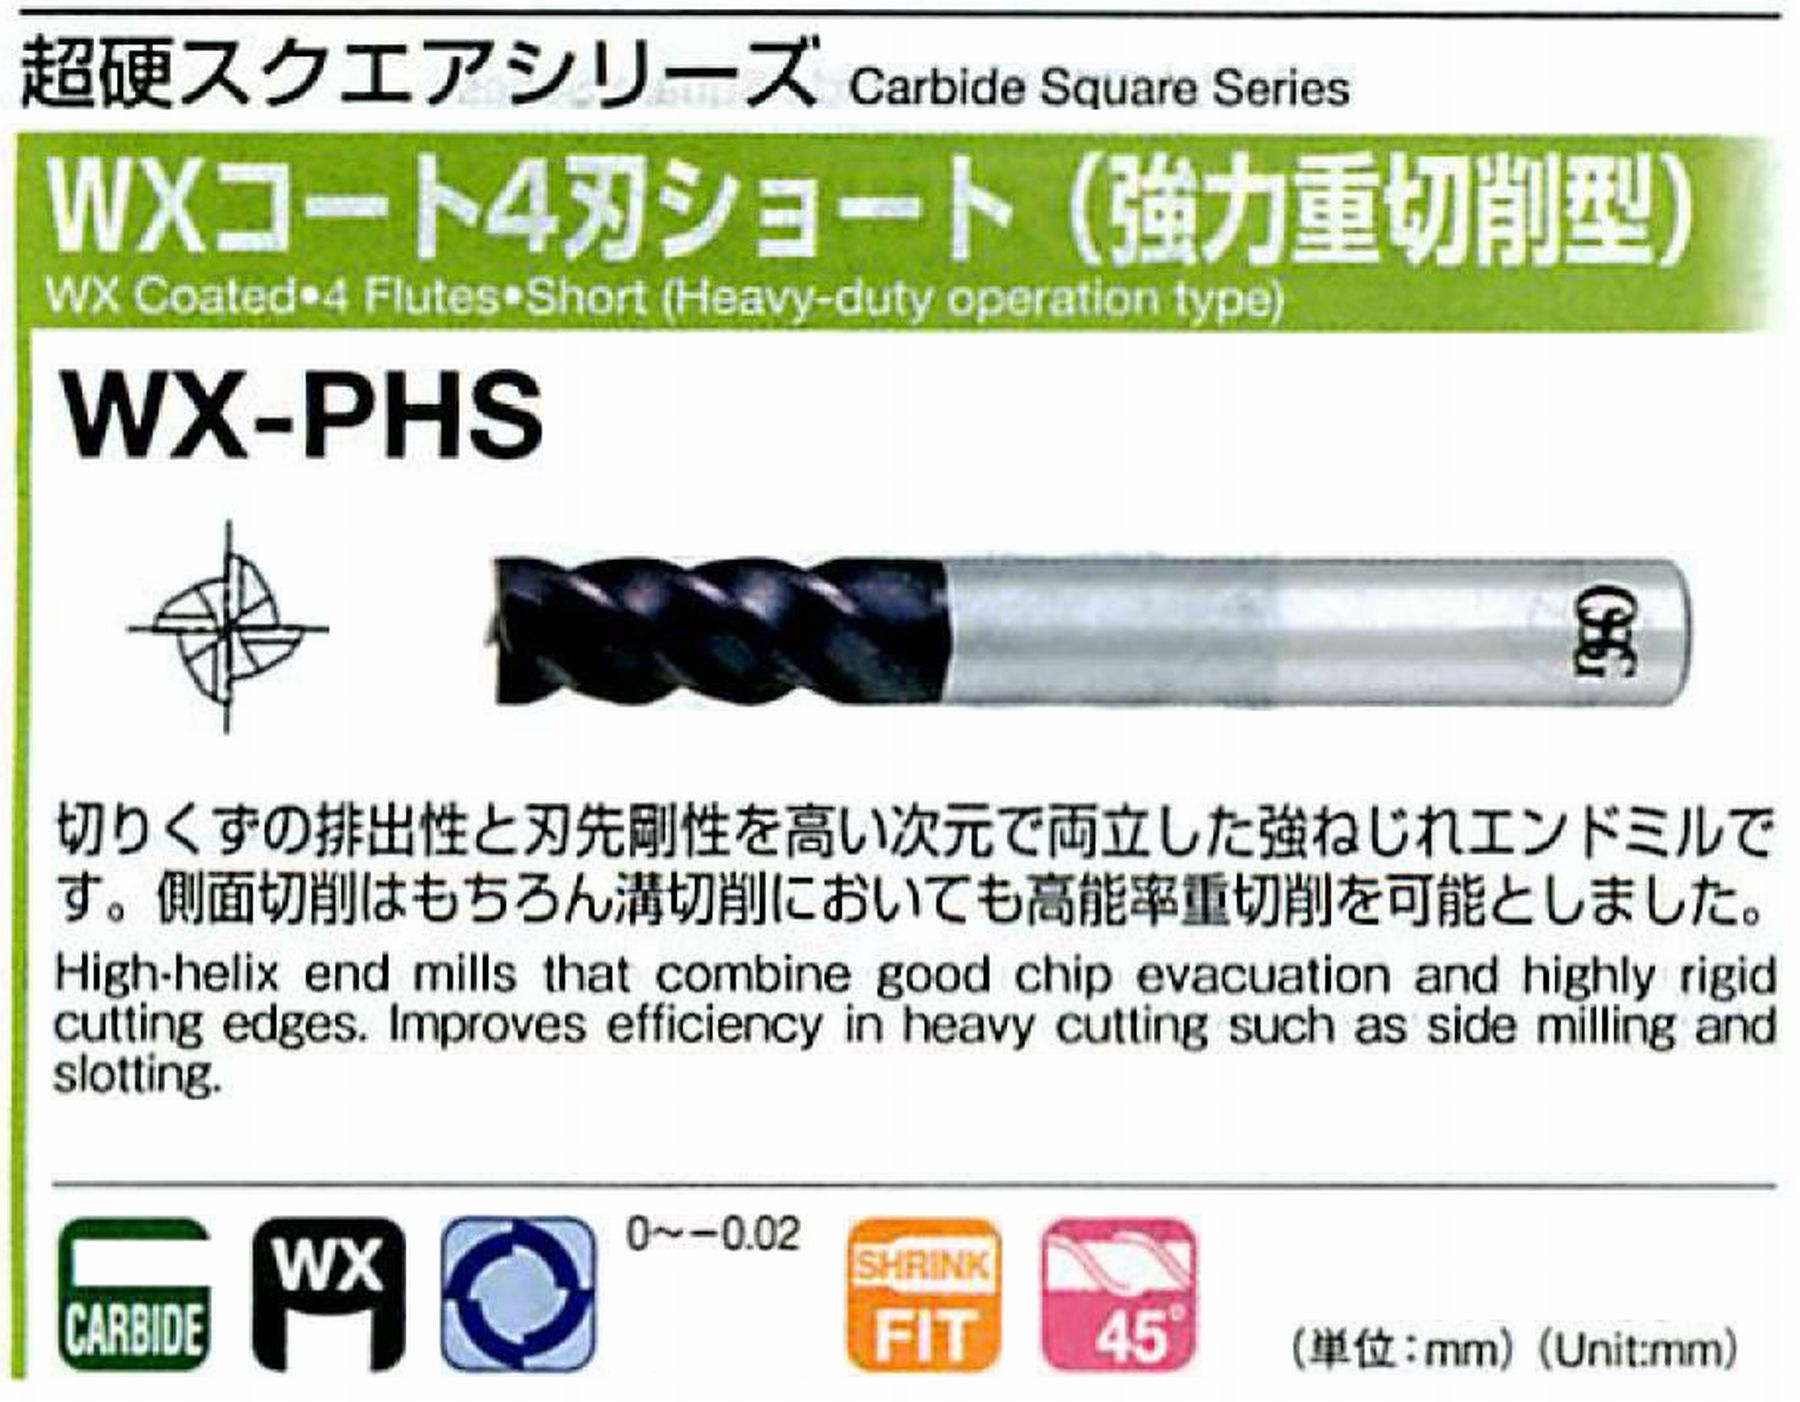 オーエスジー/OSG WXコート4刃 ショート(強力重切削型) WX-PHS 外径20 全長125 刃長38 シャンク径20mm